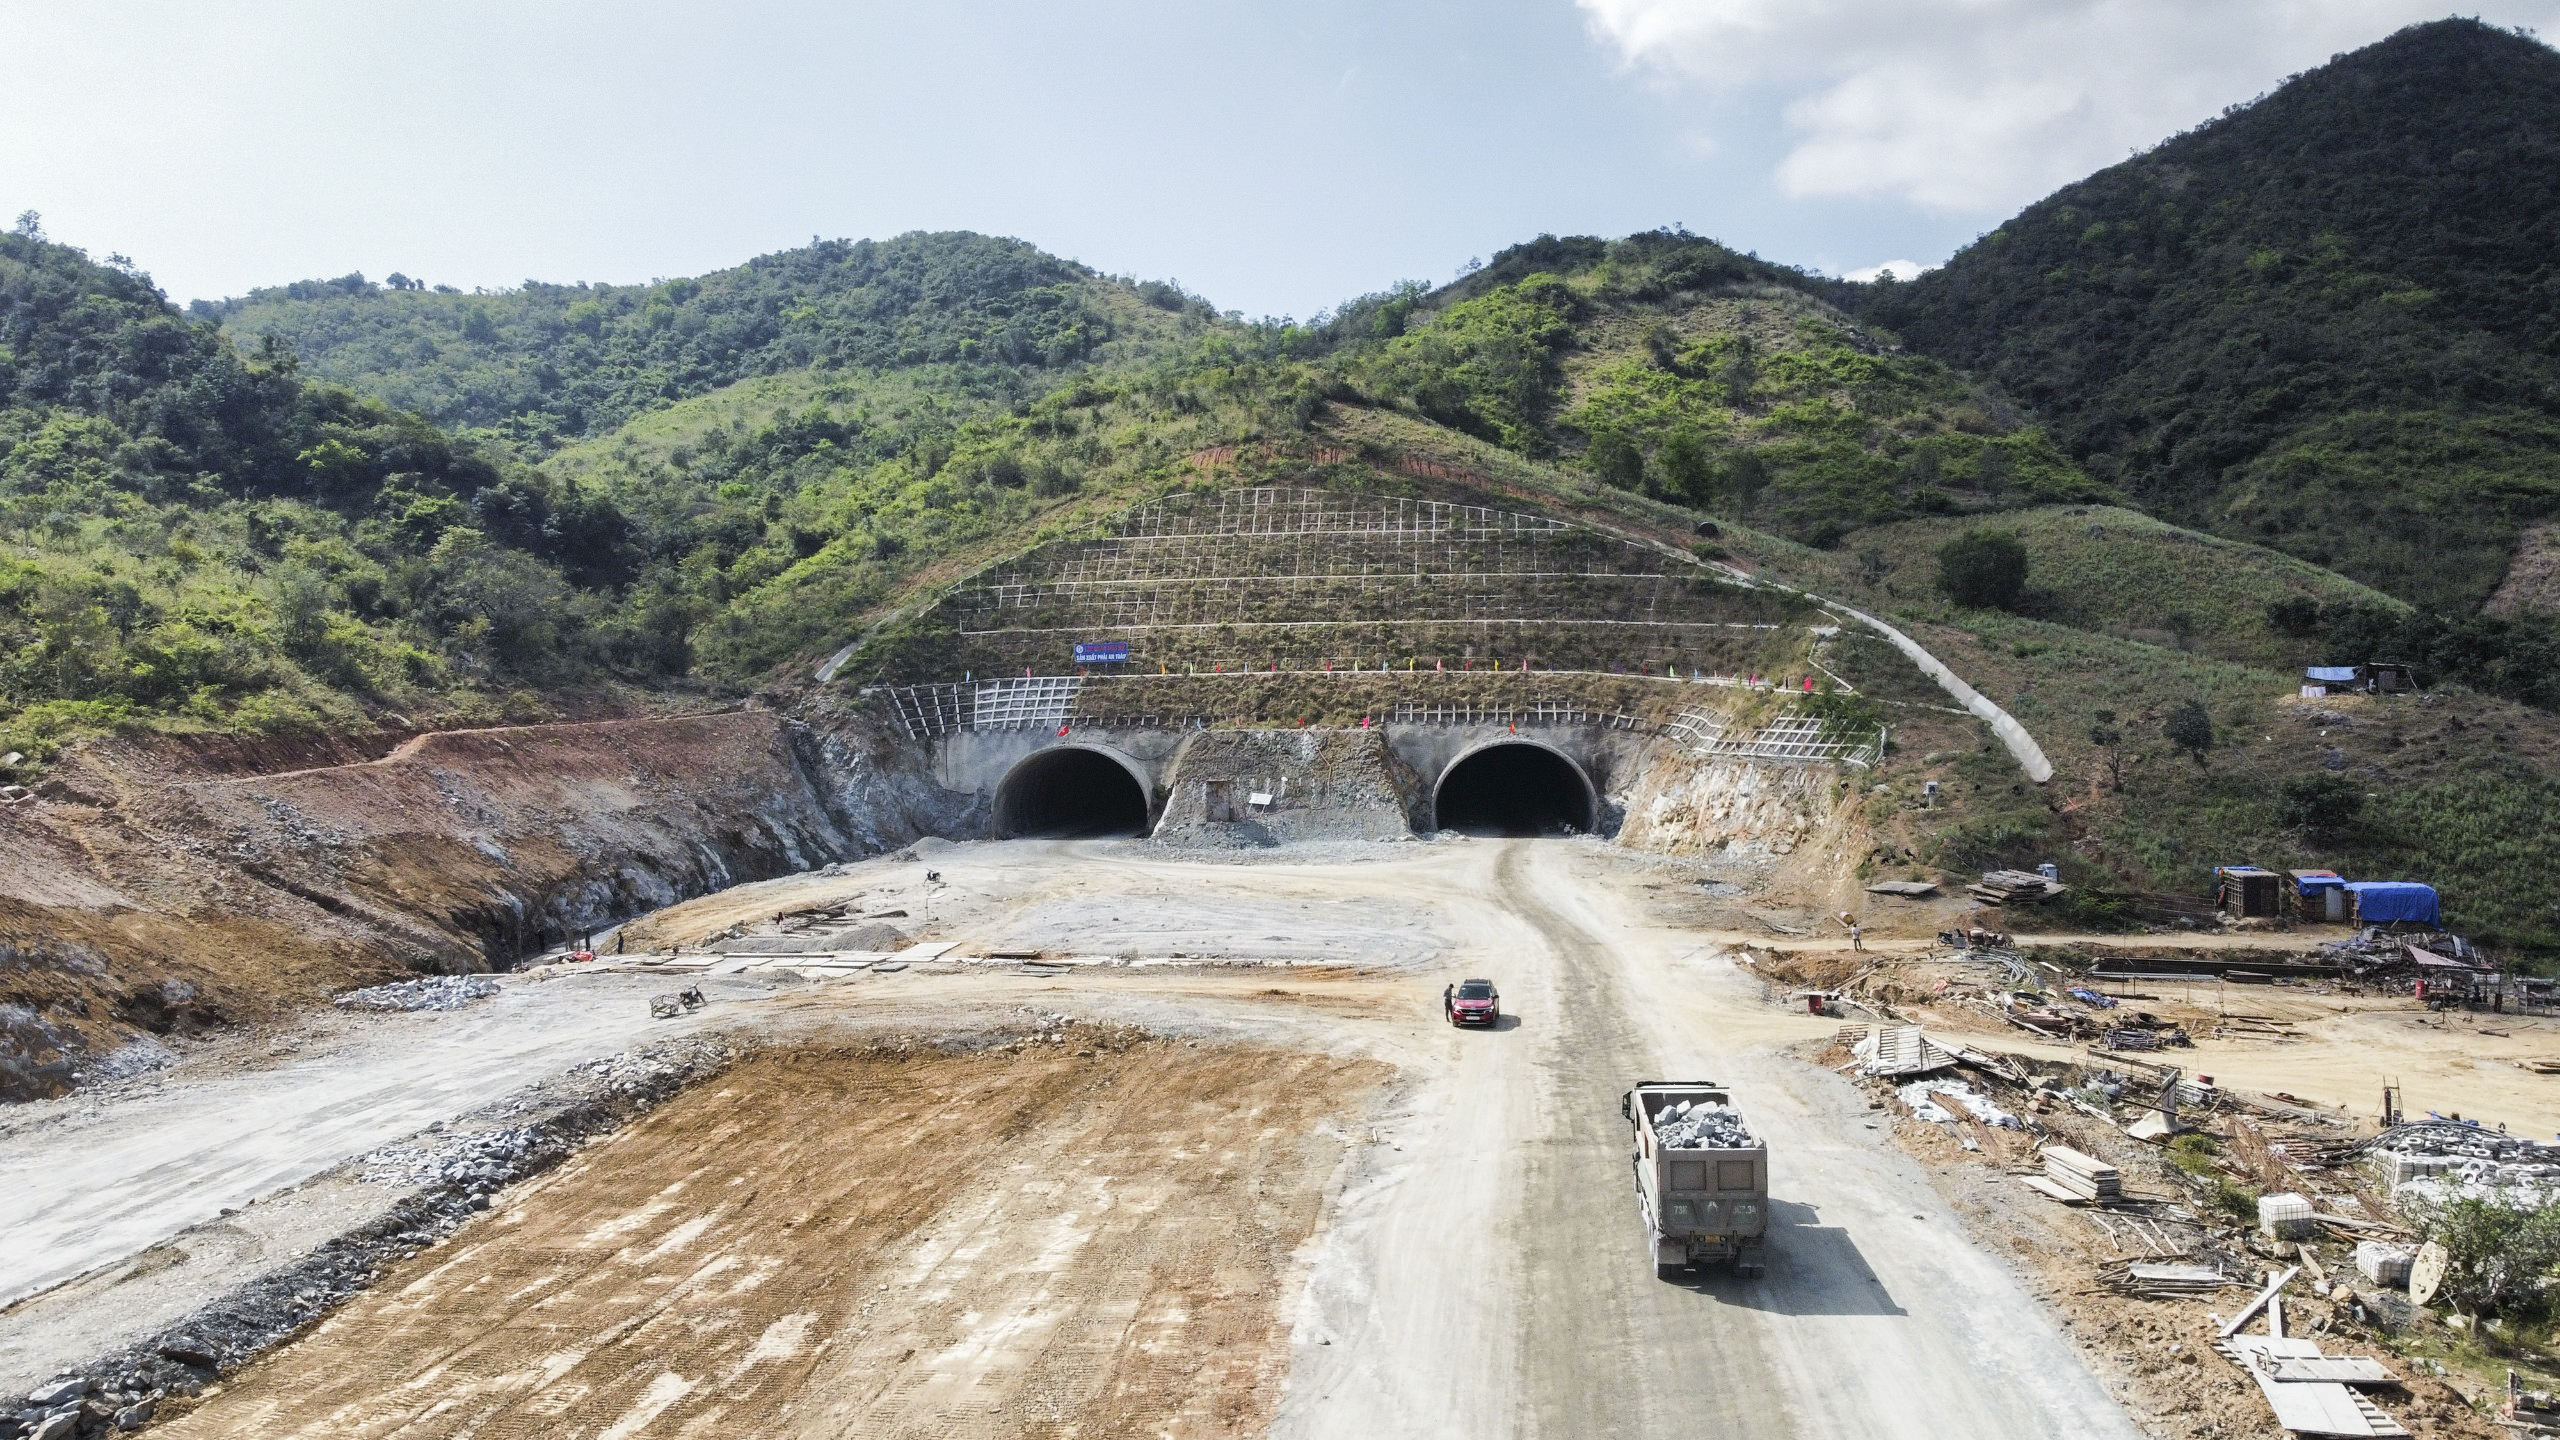 Hầm Dốc Sạn (TP. Cam Ranh) dài hơn 700m mỗi bên, đã được thông kỹ thuật. Hiện, nhà thầu đang hoàn thiện các công đoạn còn lại của hạng mục này.